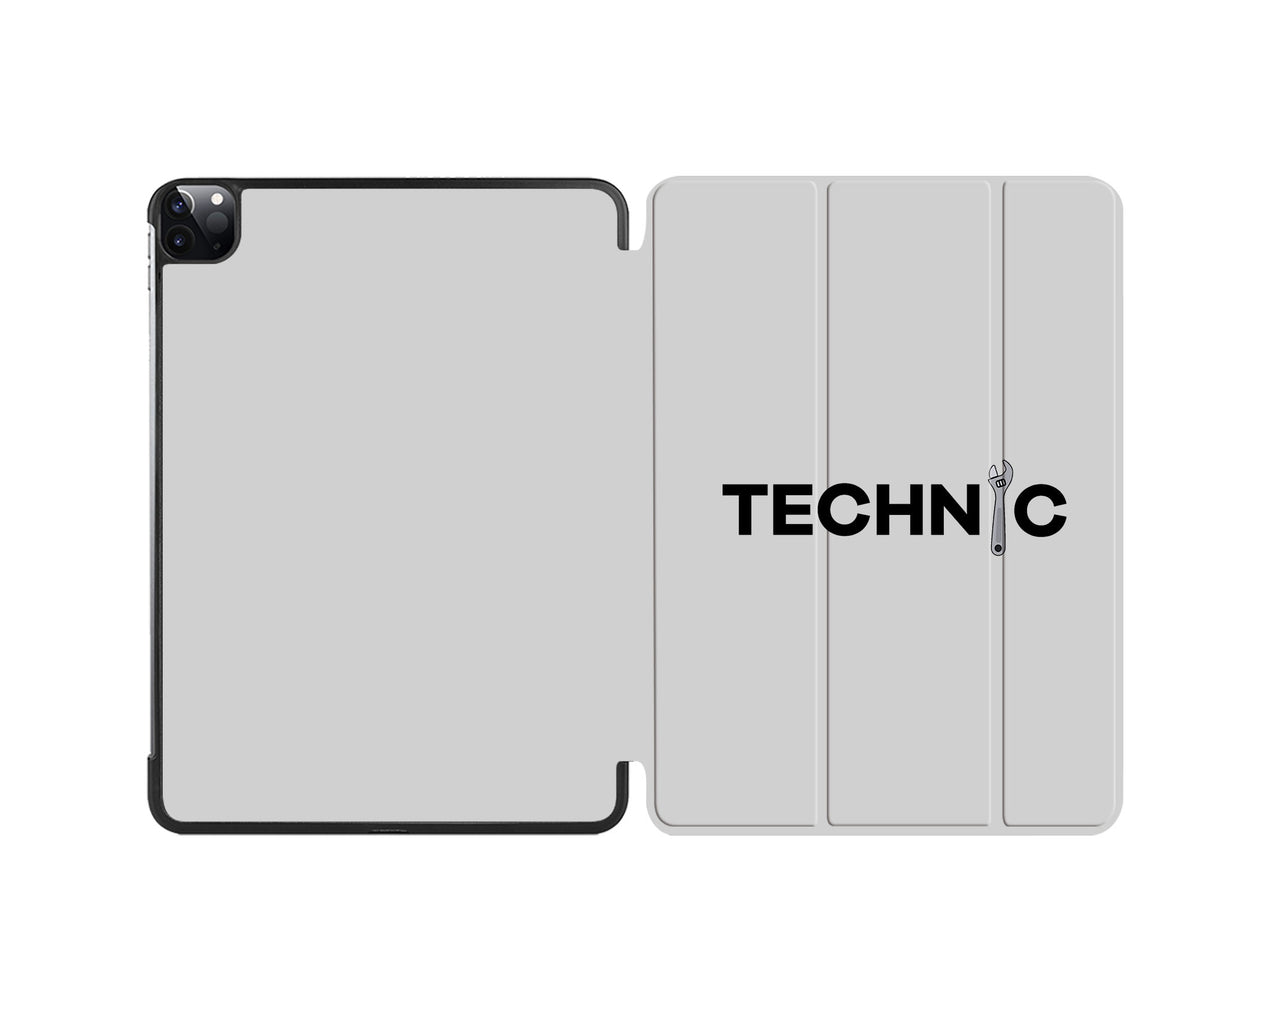 Technic Designed iPad Cases